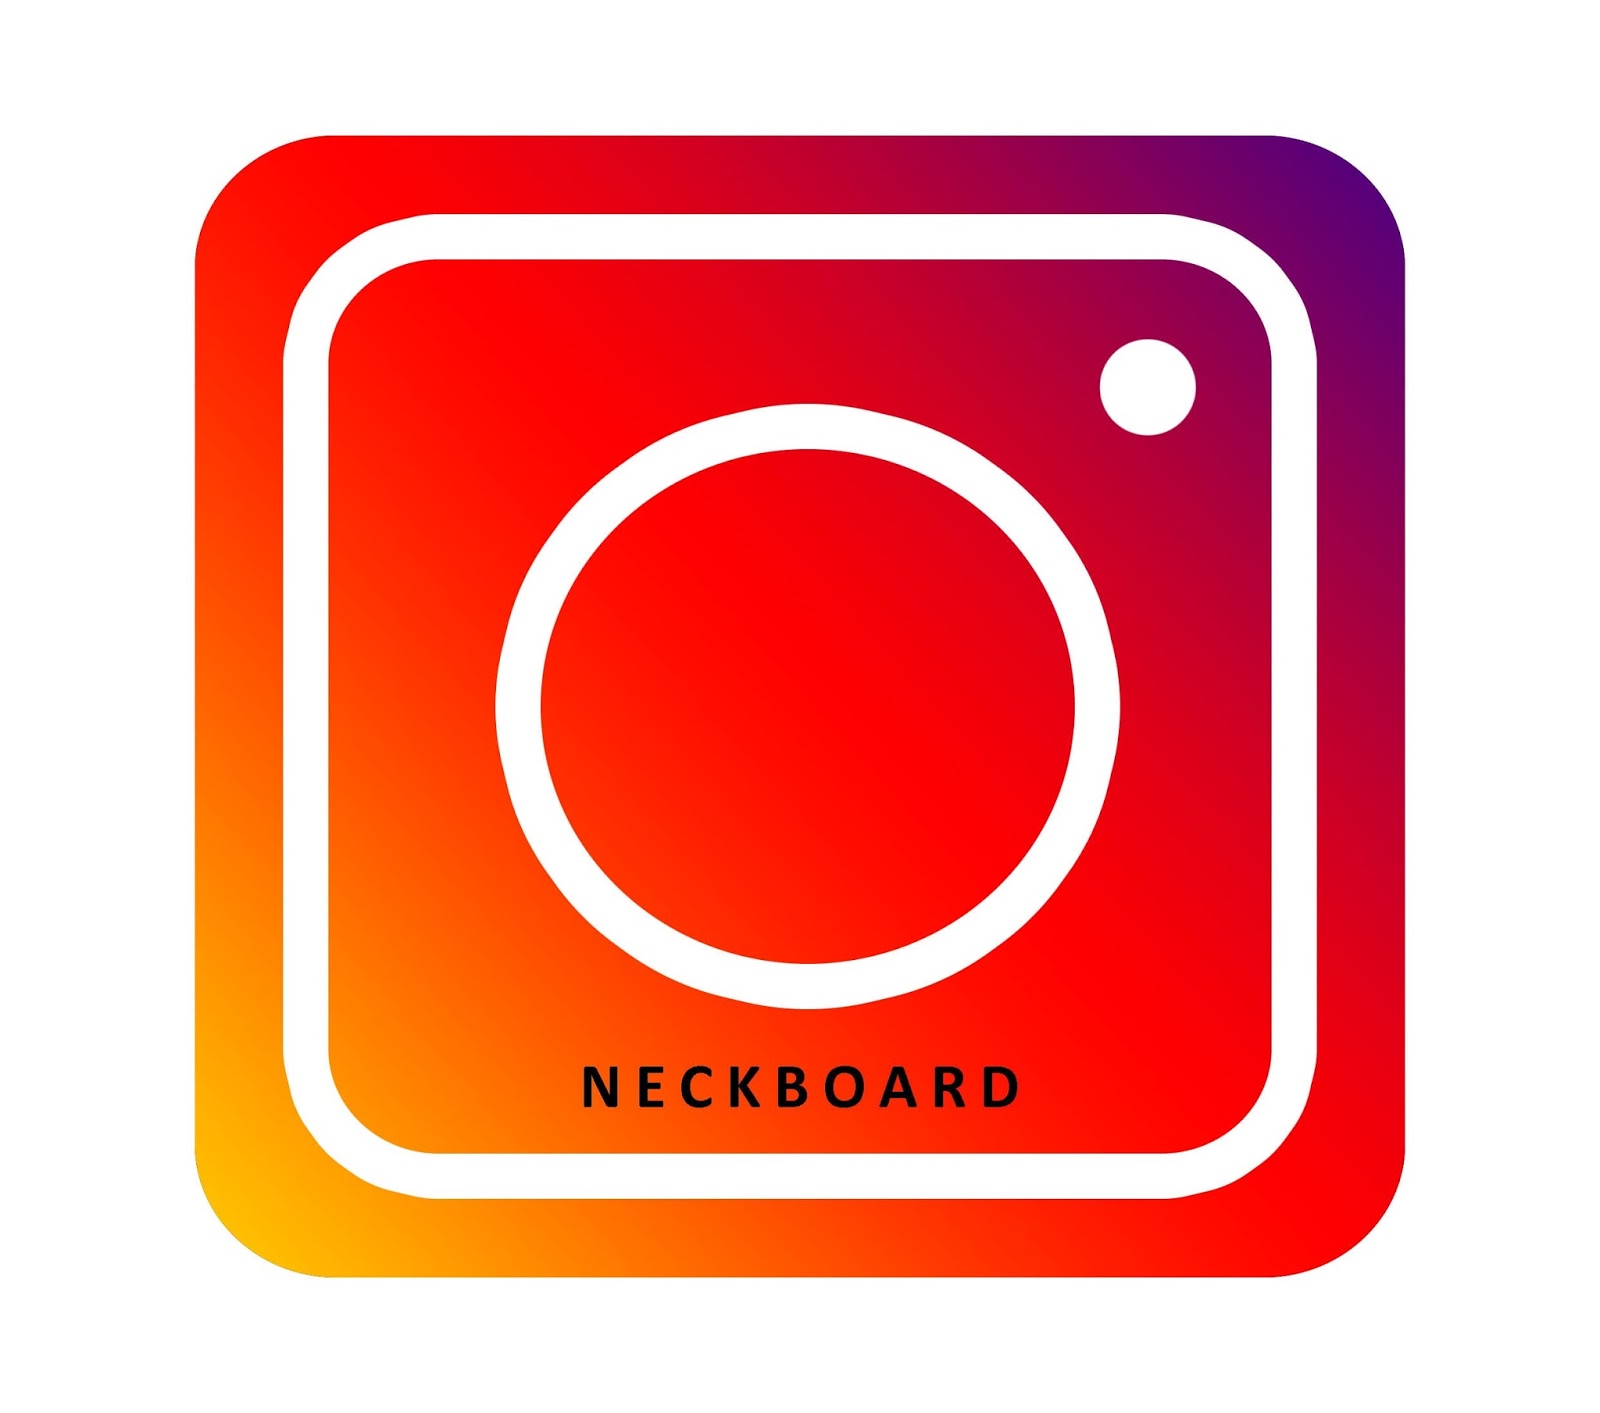 Cara Membuat Logo Instagram Mudah Di Photoshop NECKBOARD